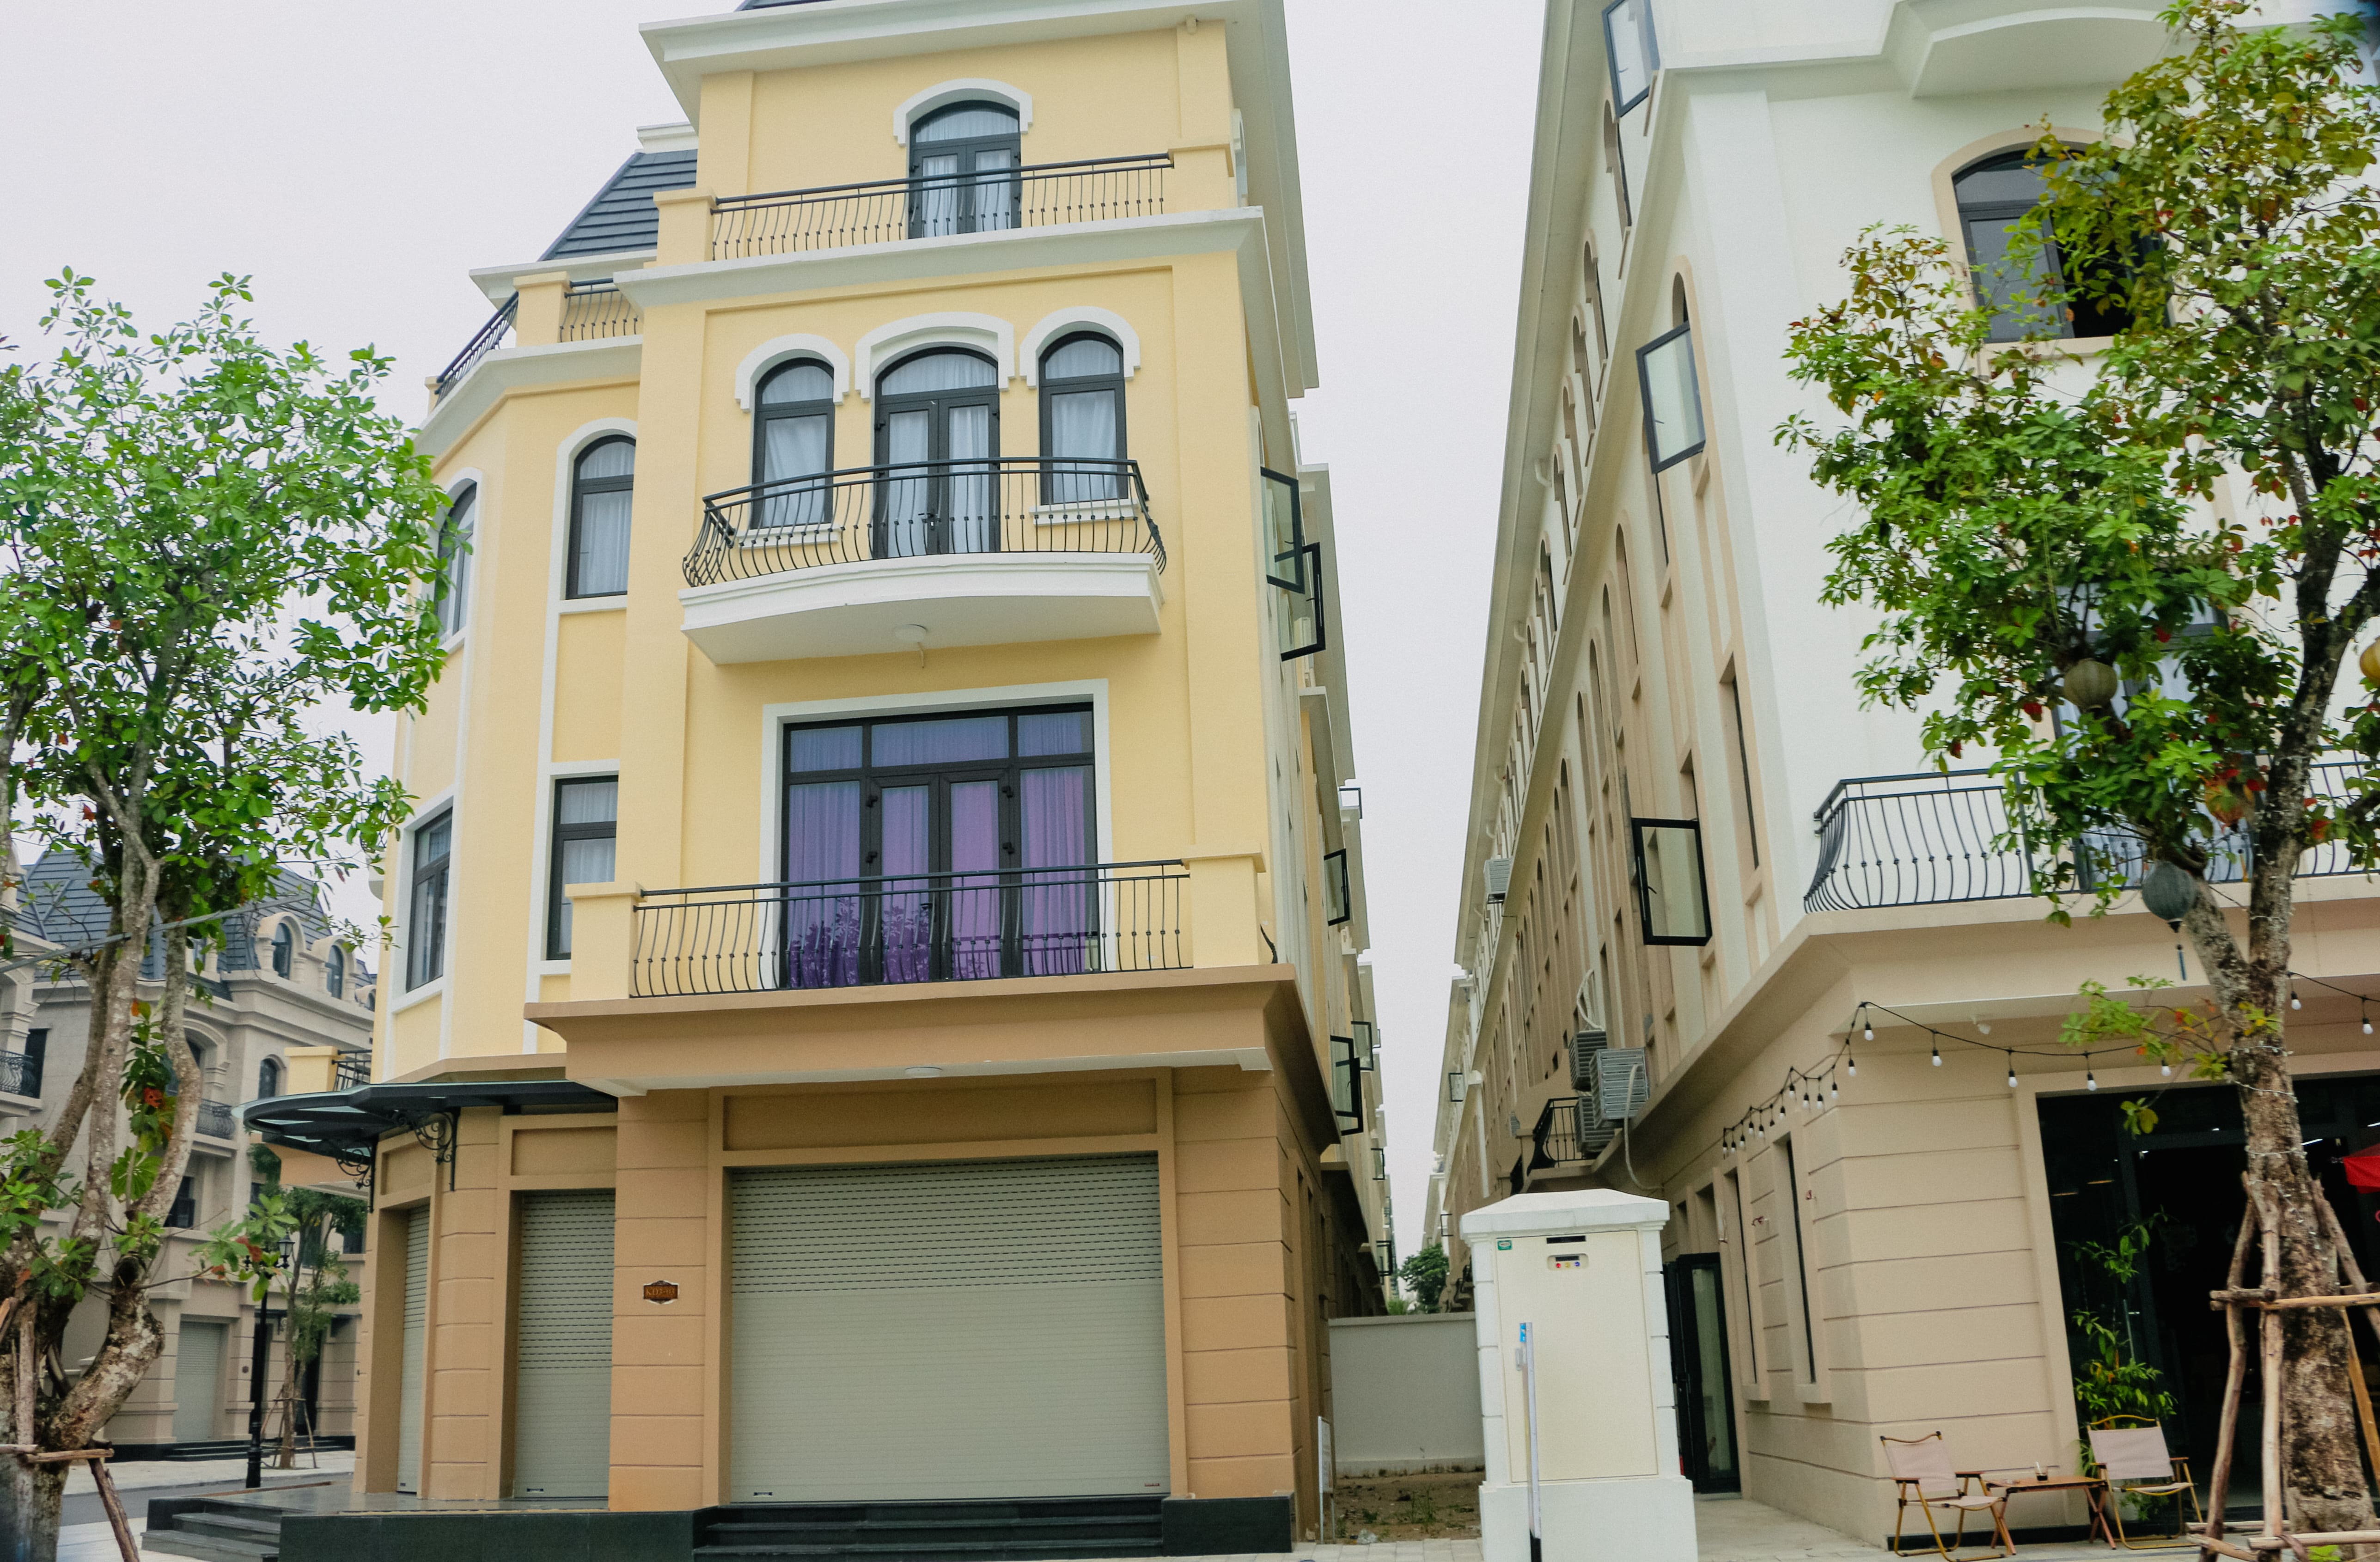 Cần bán nhà liền kề San Hô 6, diện tích: 112m2, giao cắt với đường San Hô 27 Vinhomes Ocean Park 2